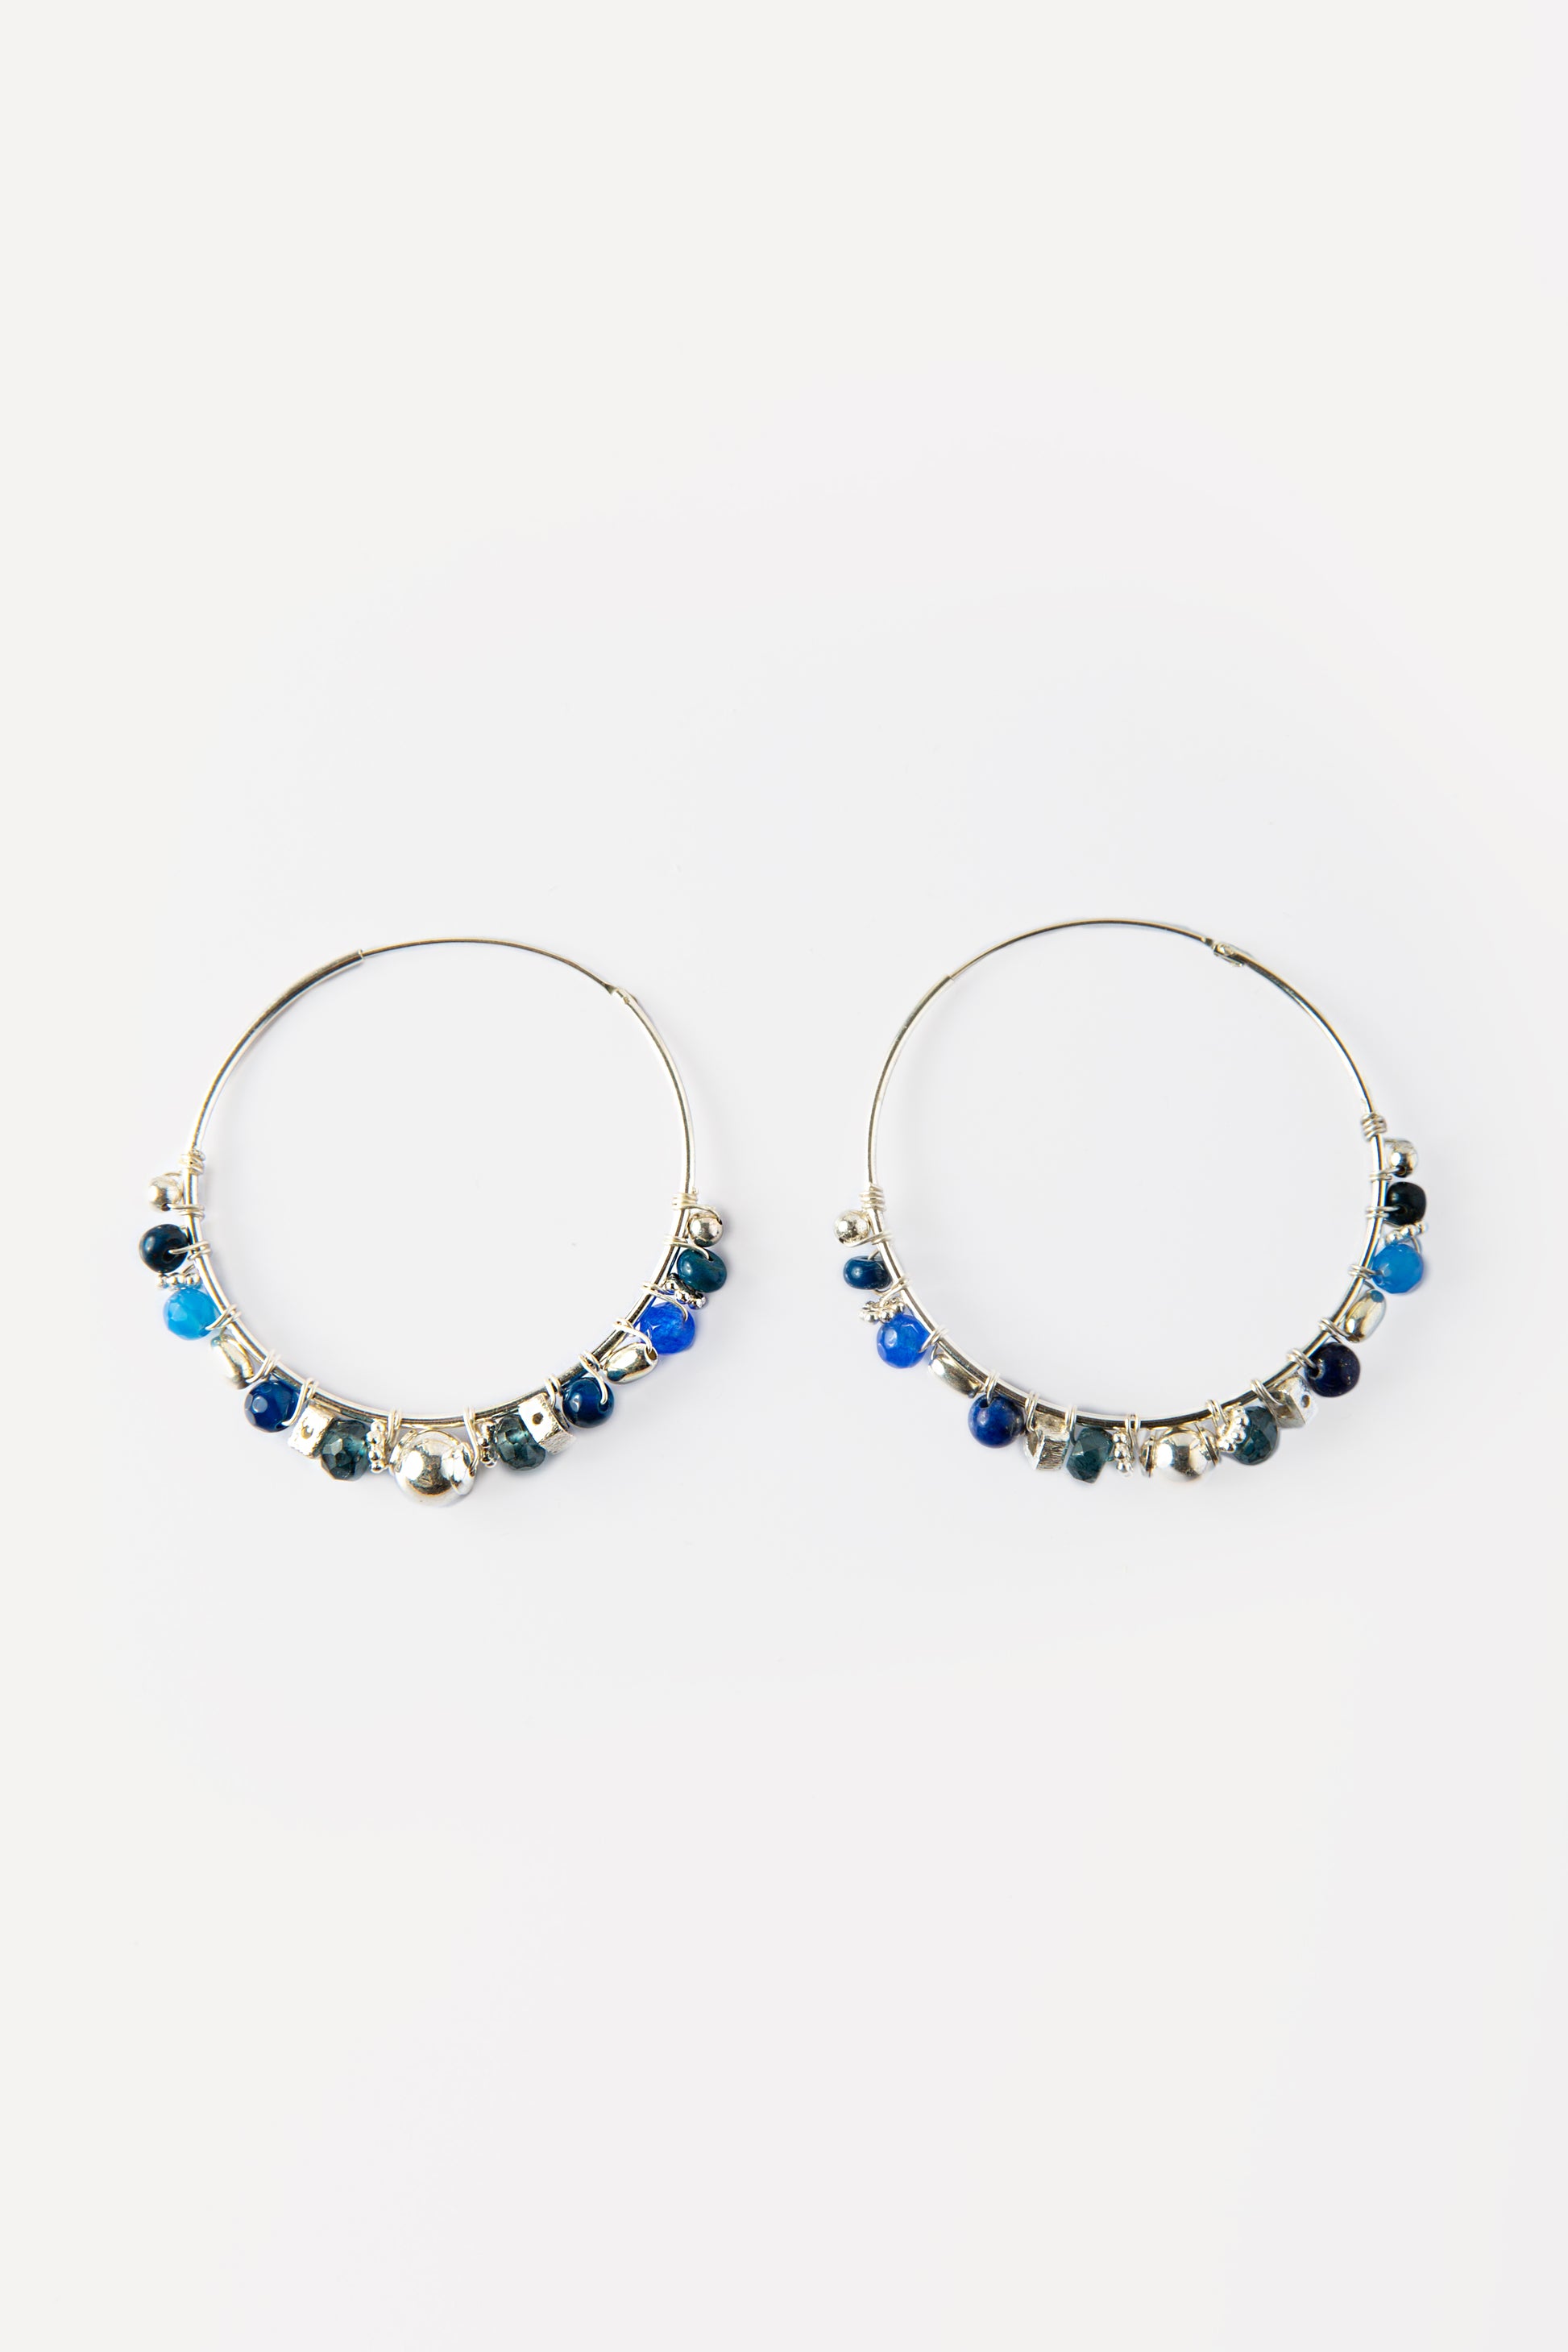 #anelle #argento #silver #lapislazzuli #turchesi #orecchino #regalodonna #gioiello #jewelery